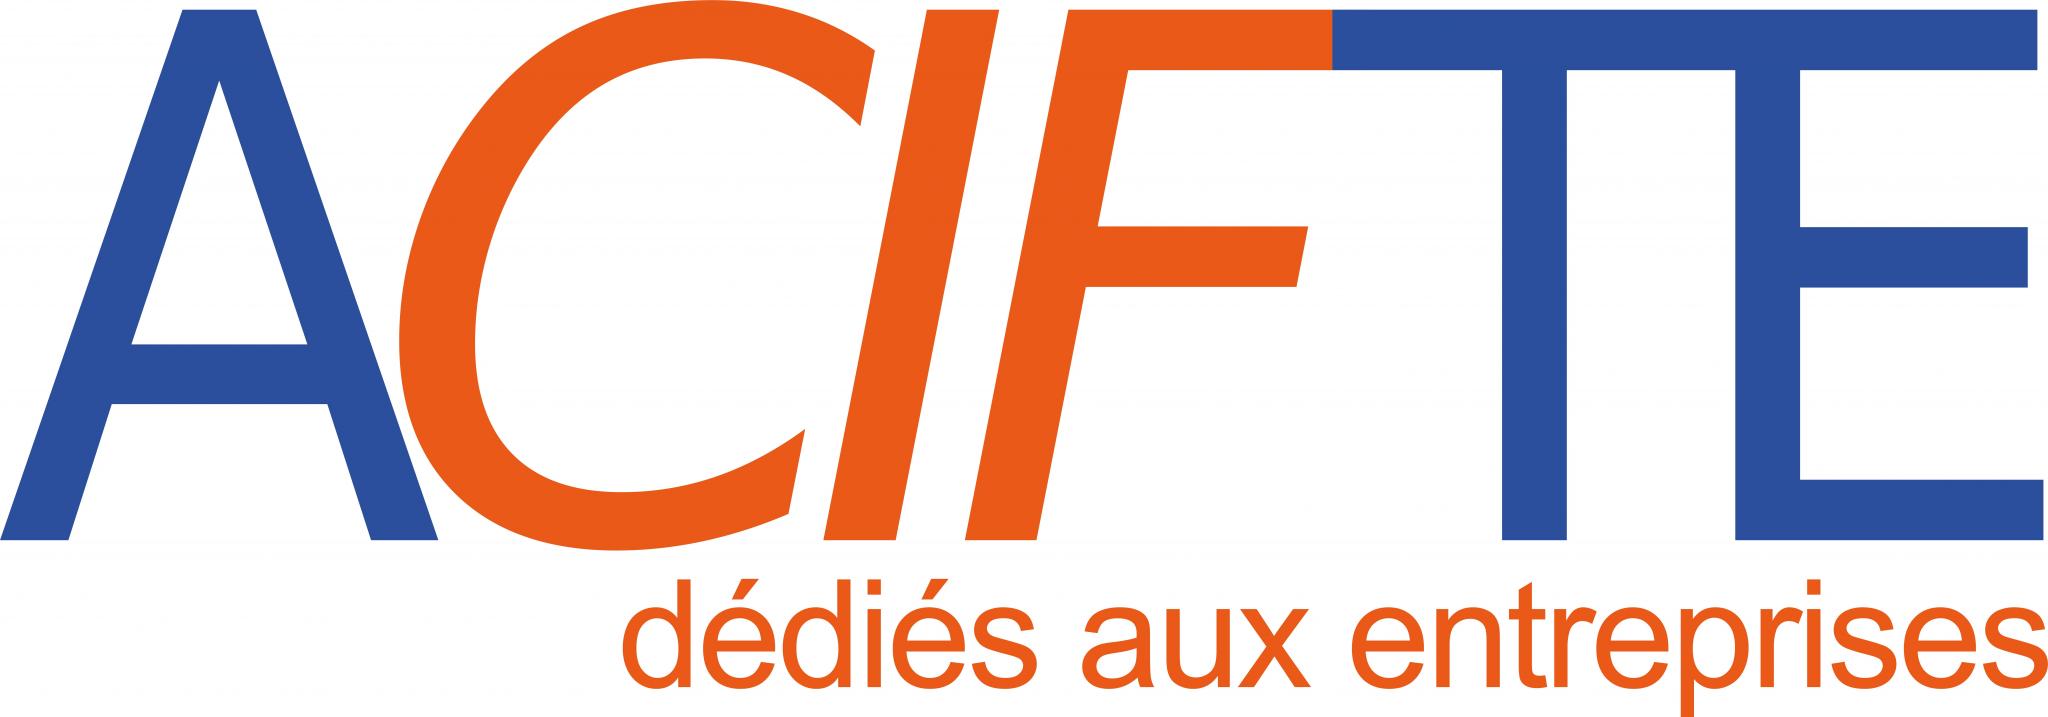 logo-ACIFTE